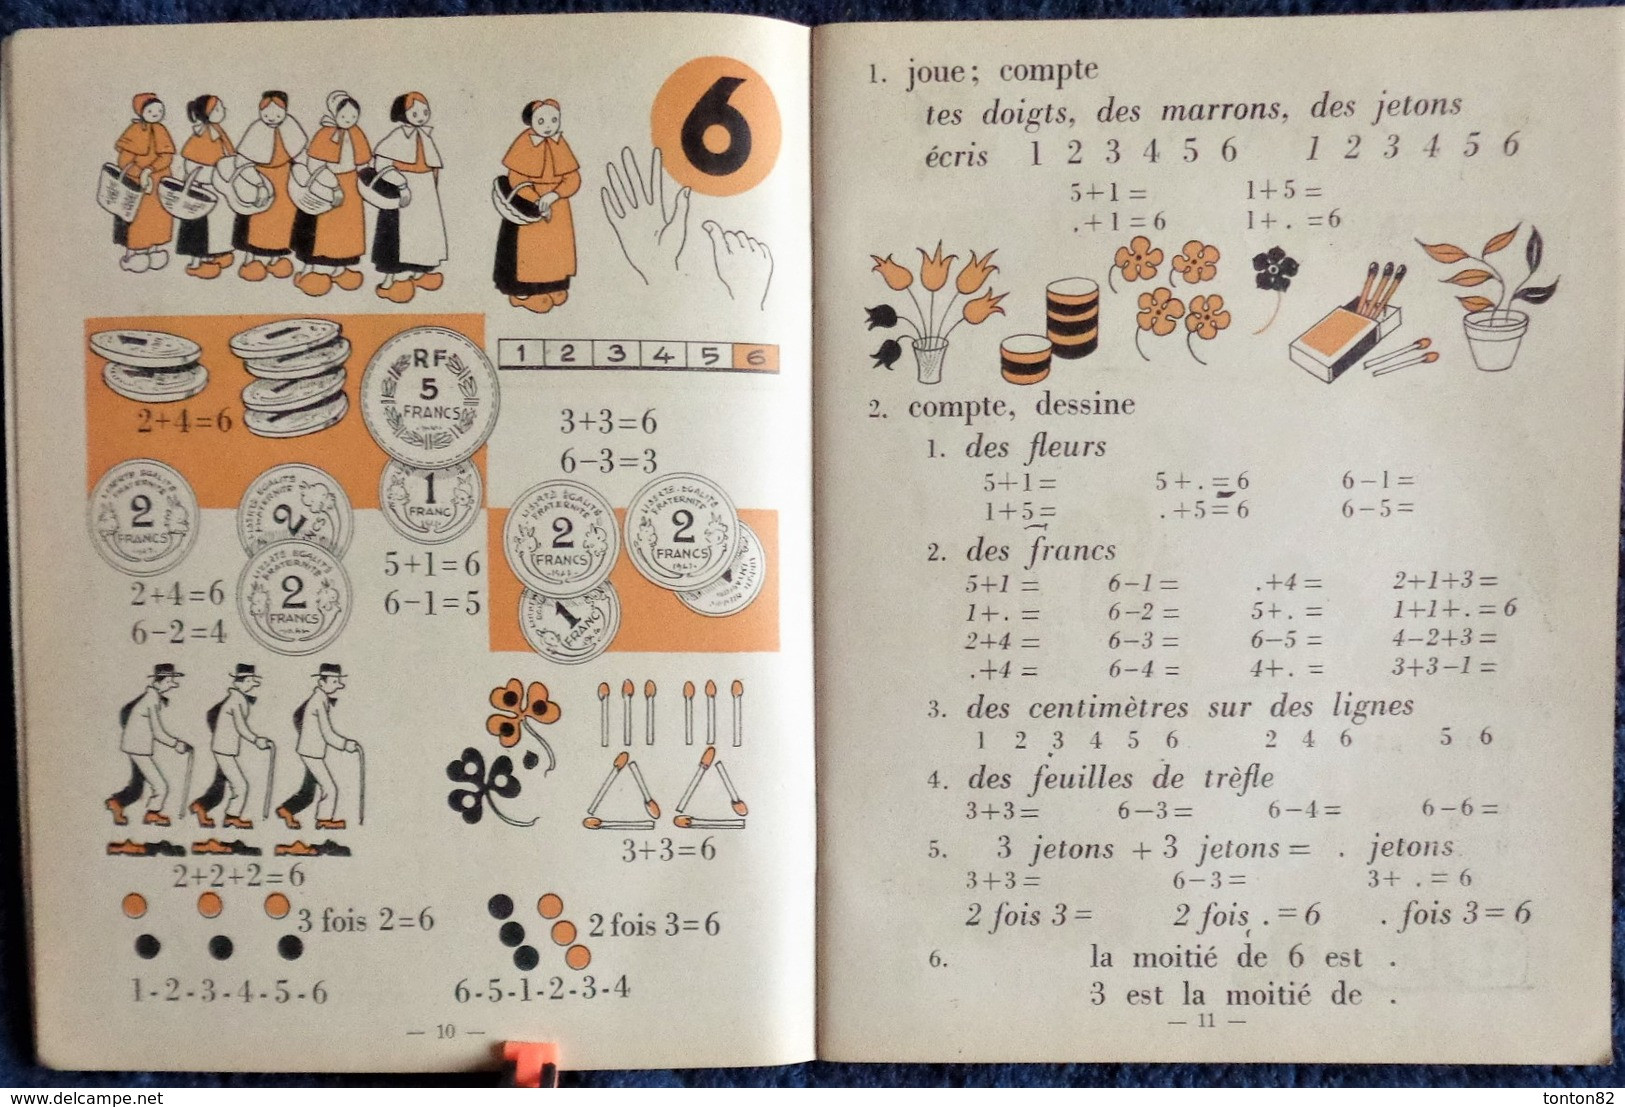 U. Coux - M.M. Deyres - Pour Compter Comme Les Grands - 1er Livre De Calcul - Charles-Lavauzelle & Cie, éditeurs - 1950 - 0-6 Jaar